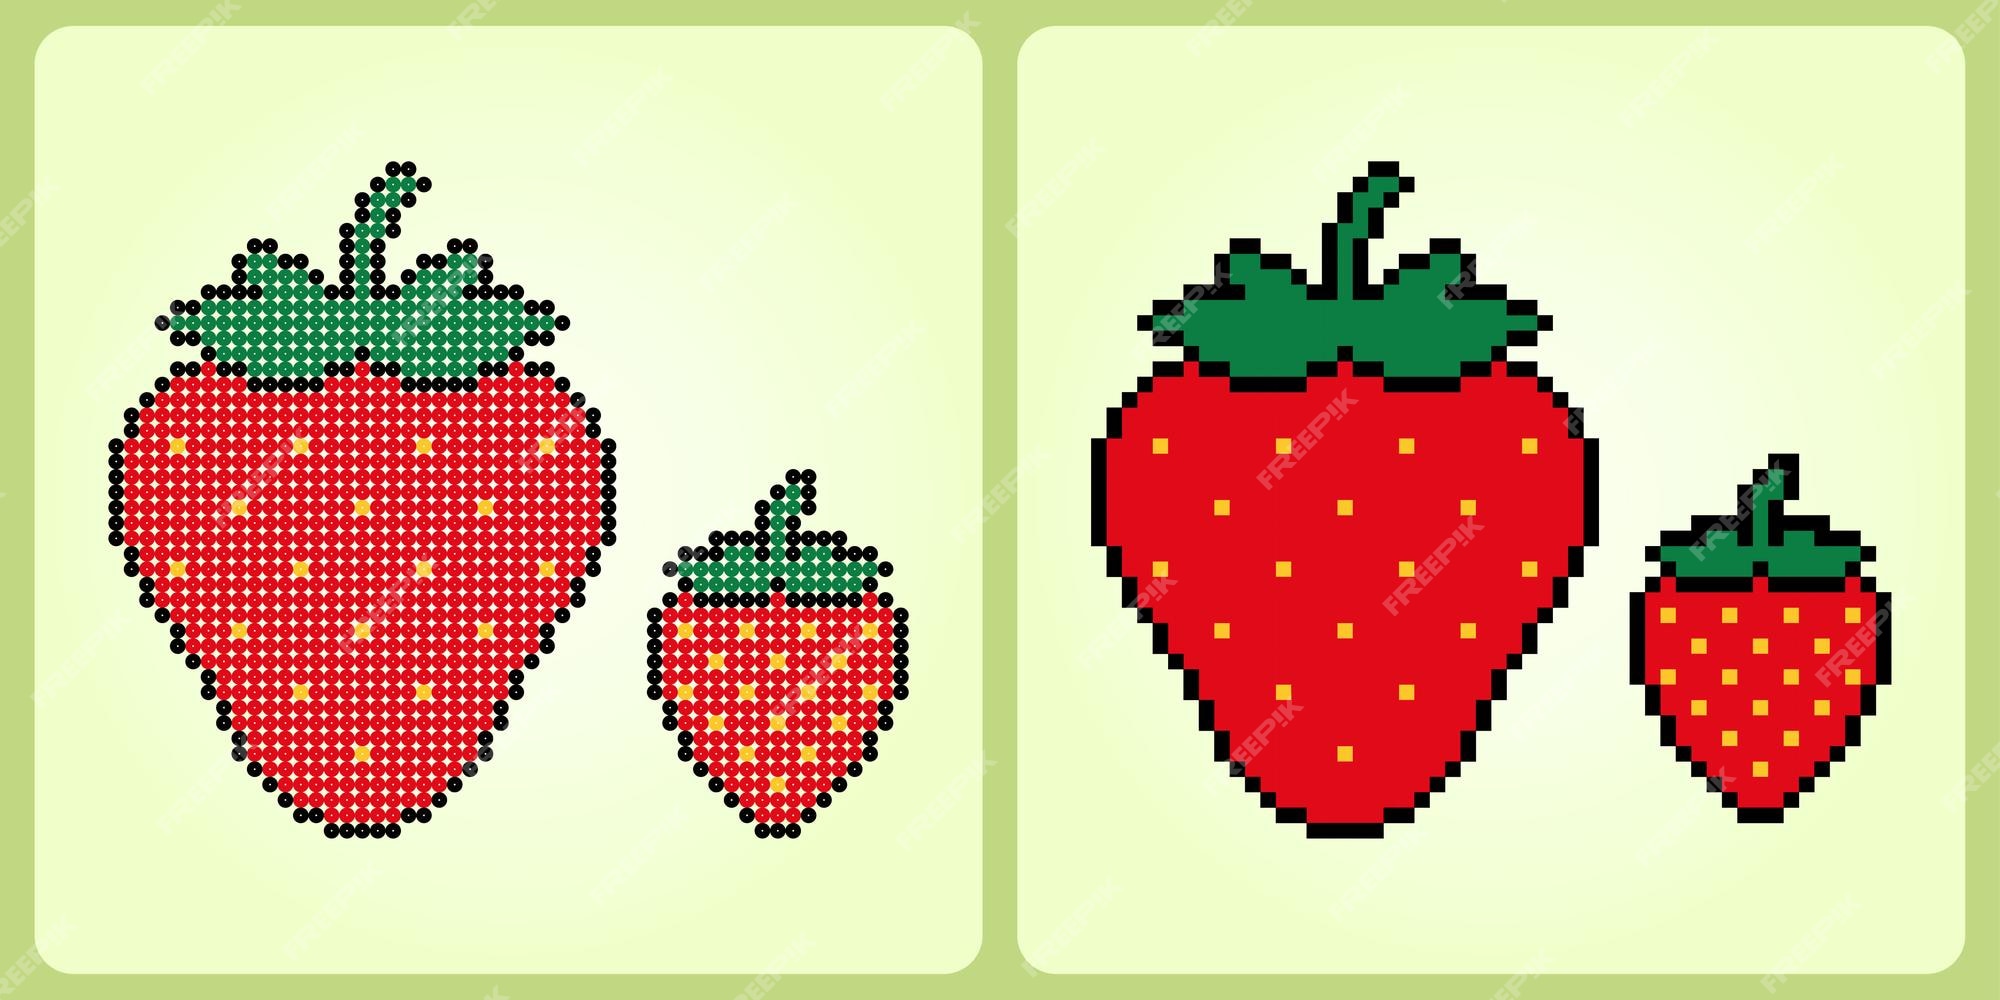 8 bits de pixel por gema de ovo. alimentos para ativos de jogos e padrões  de ponto cruz em ilustrações vetoriais. 20597553 Vetor no Vecteezy